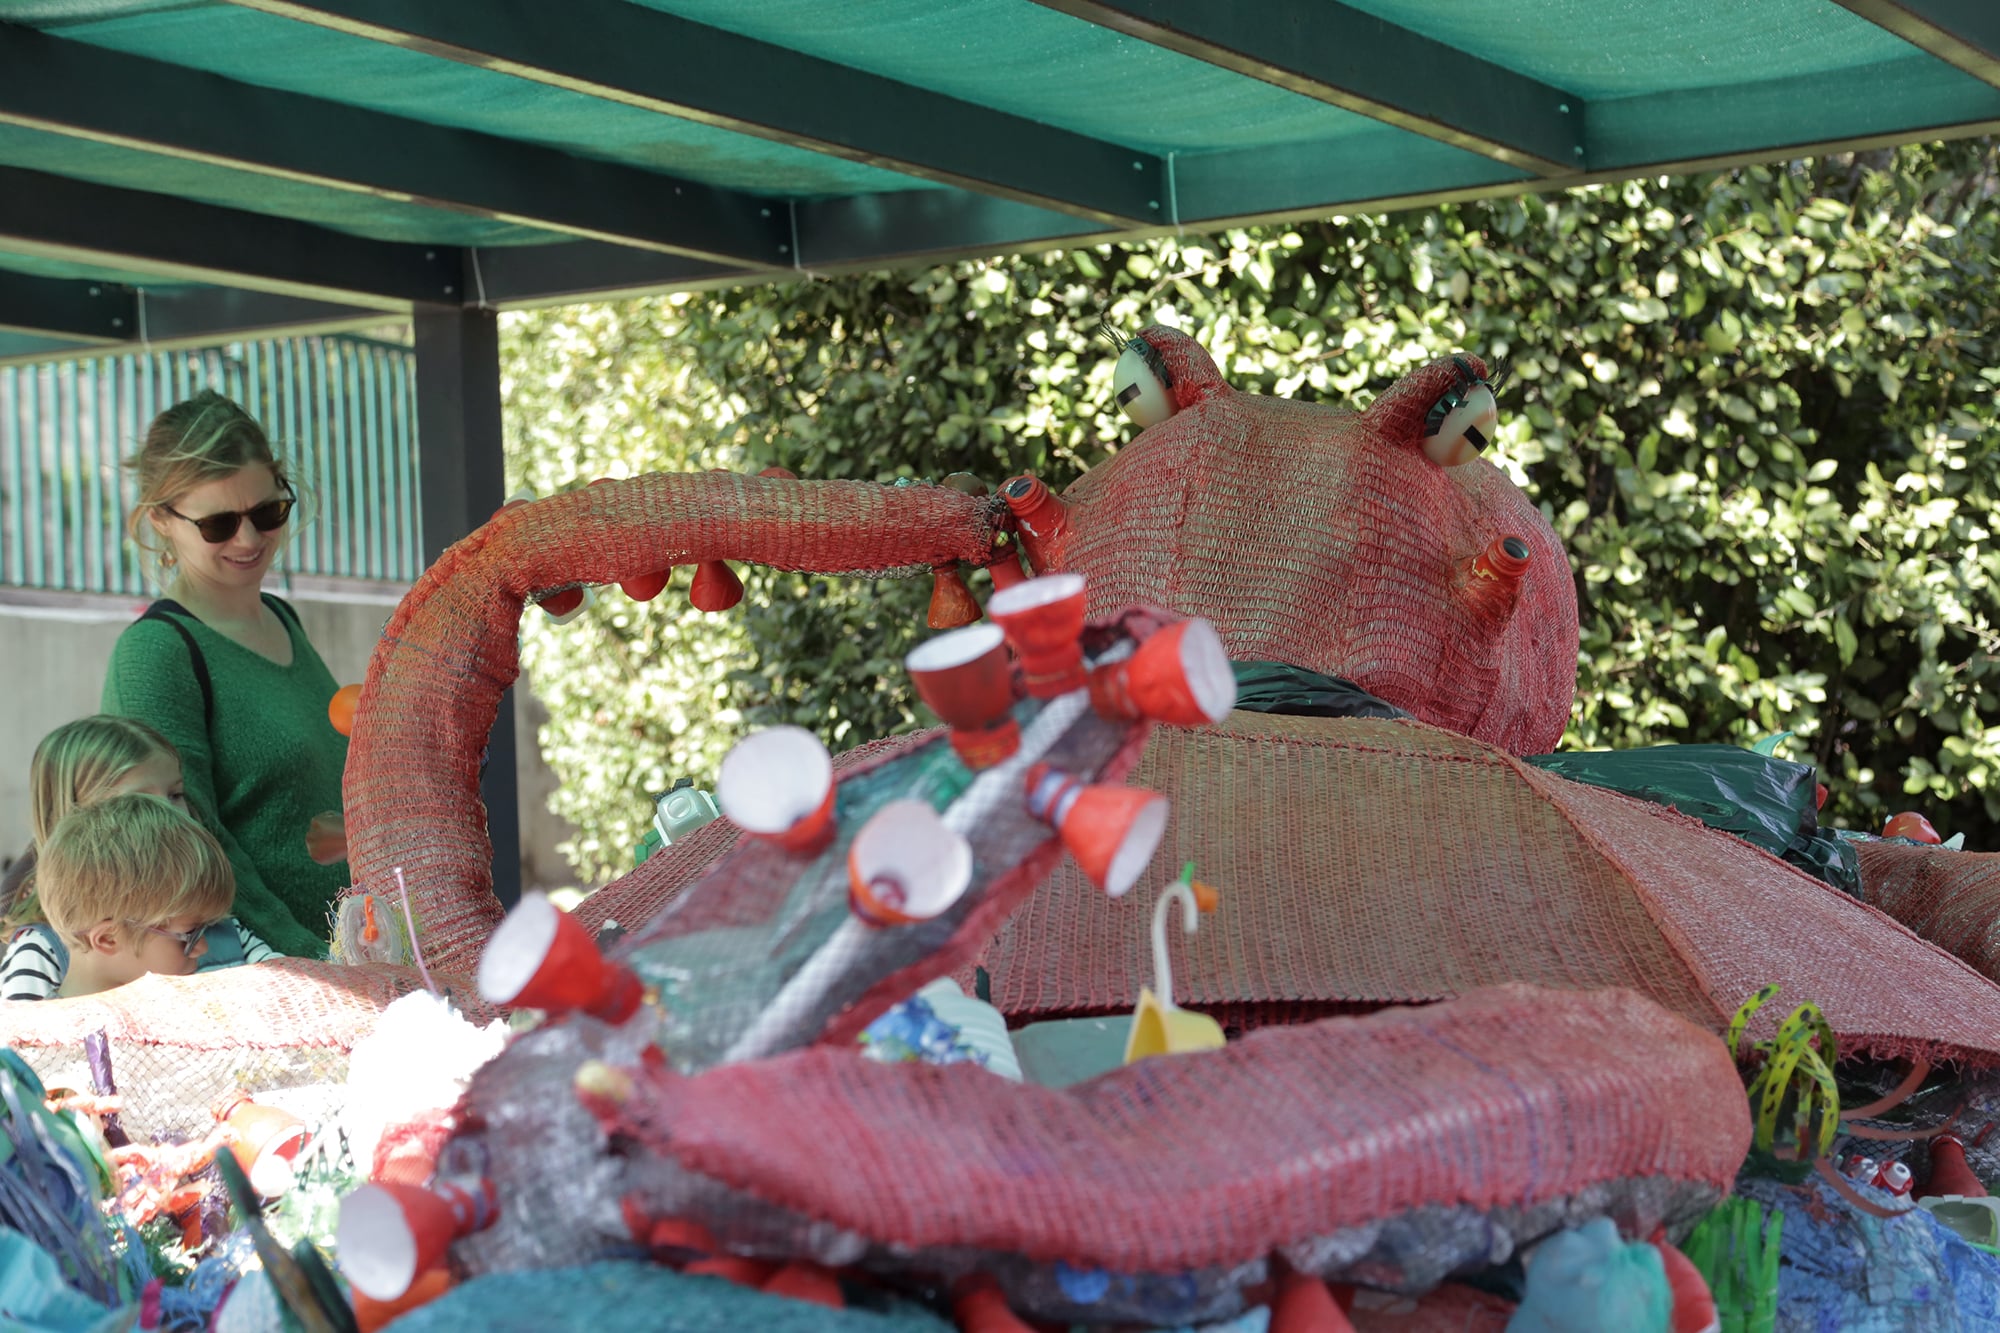 , Polo le Poulpe géant, symbole de la protection de la biodiversité, prend ses quartiers dans le parc de Bagatelle, Made in Marseille